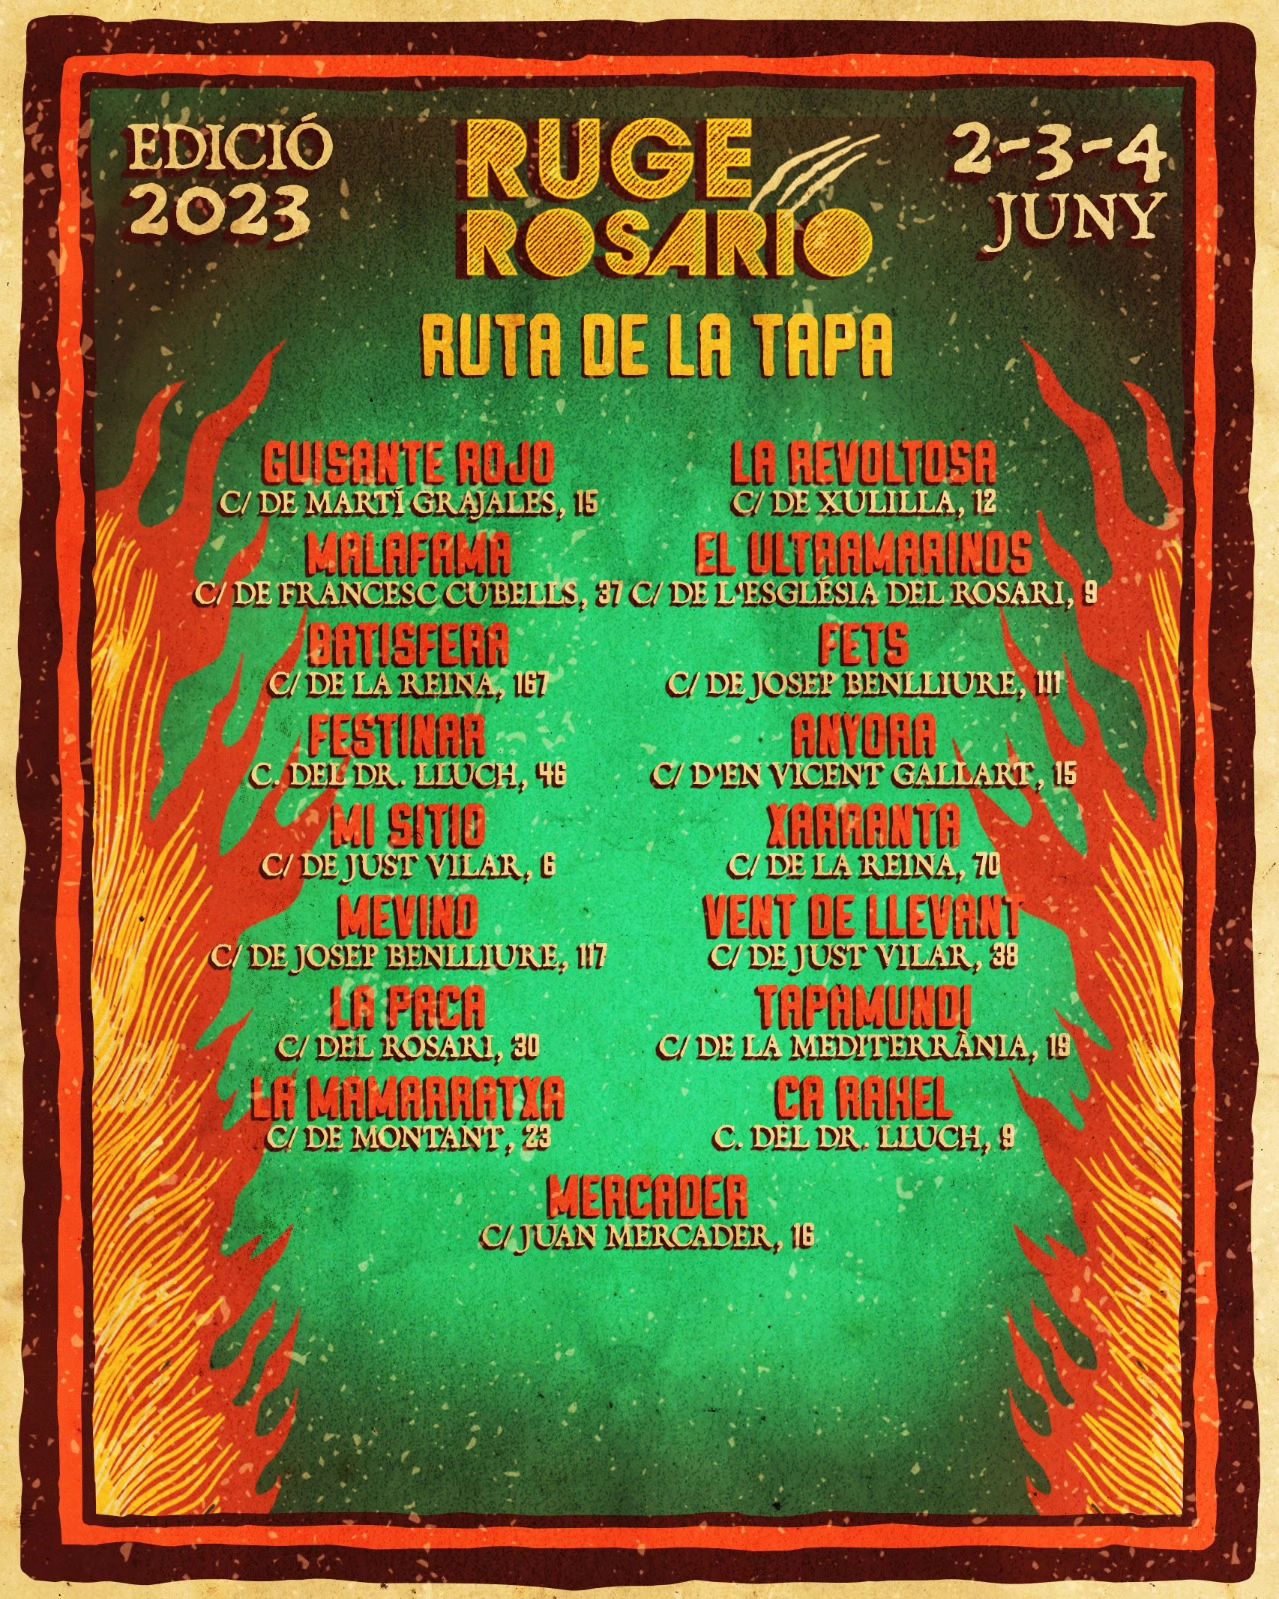 Ruta-de-la-Tapa-Ruge-Rosario-2023